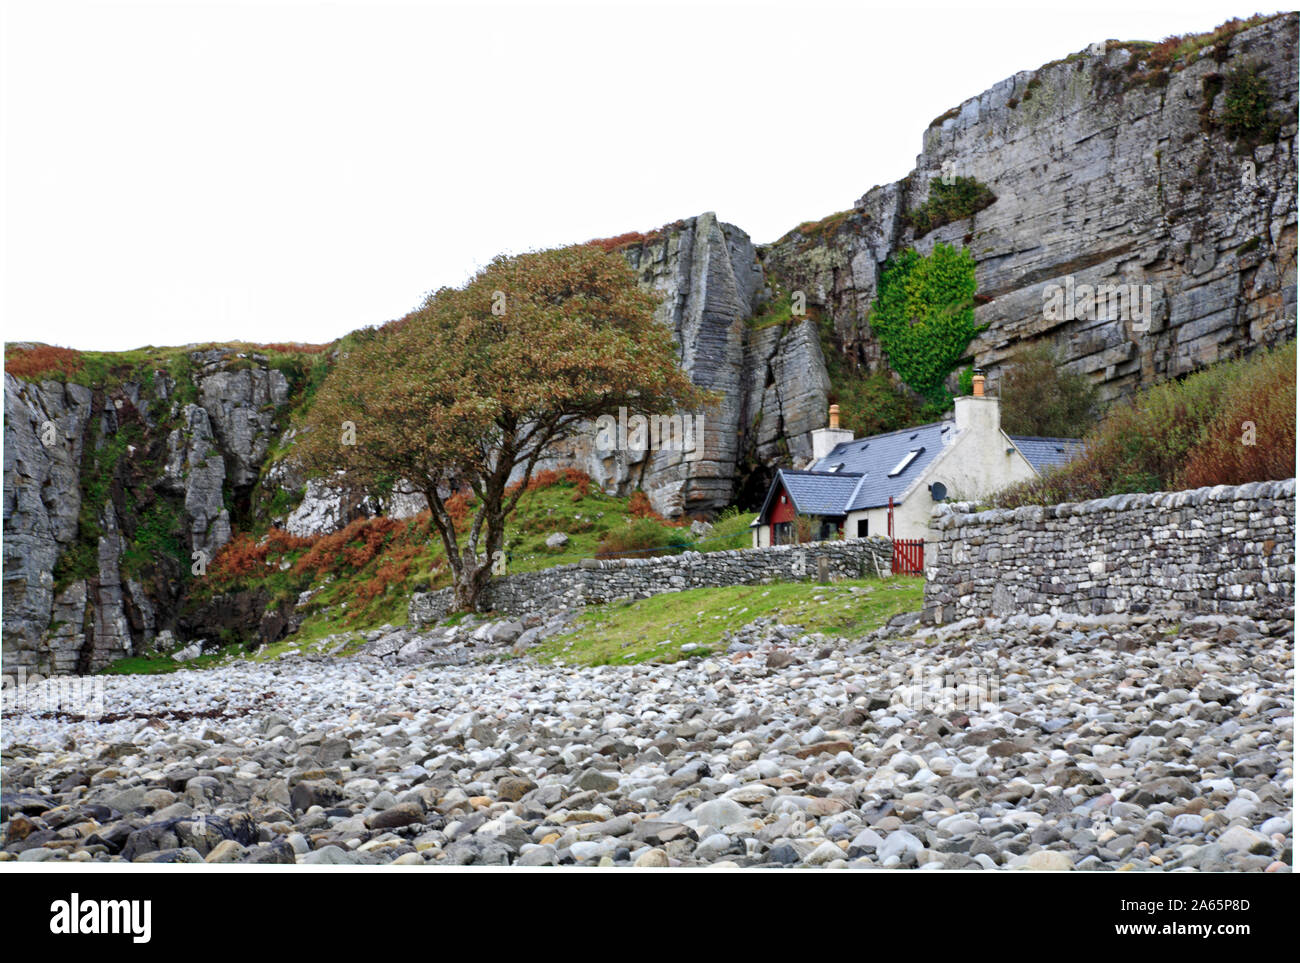 Une propriété à l'arrière d'une plage de galets sous une falaise rocheuse à Elgol, île de Skye, Écosse, Royaume-Uni, Europe. Banque D'Images